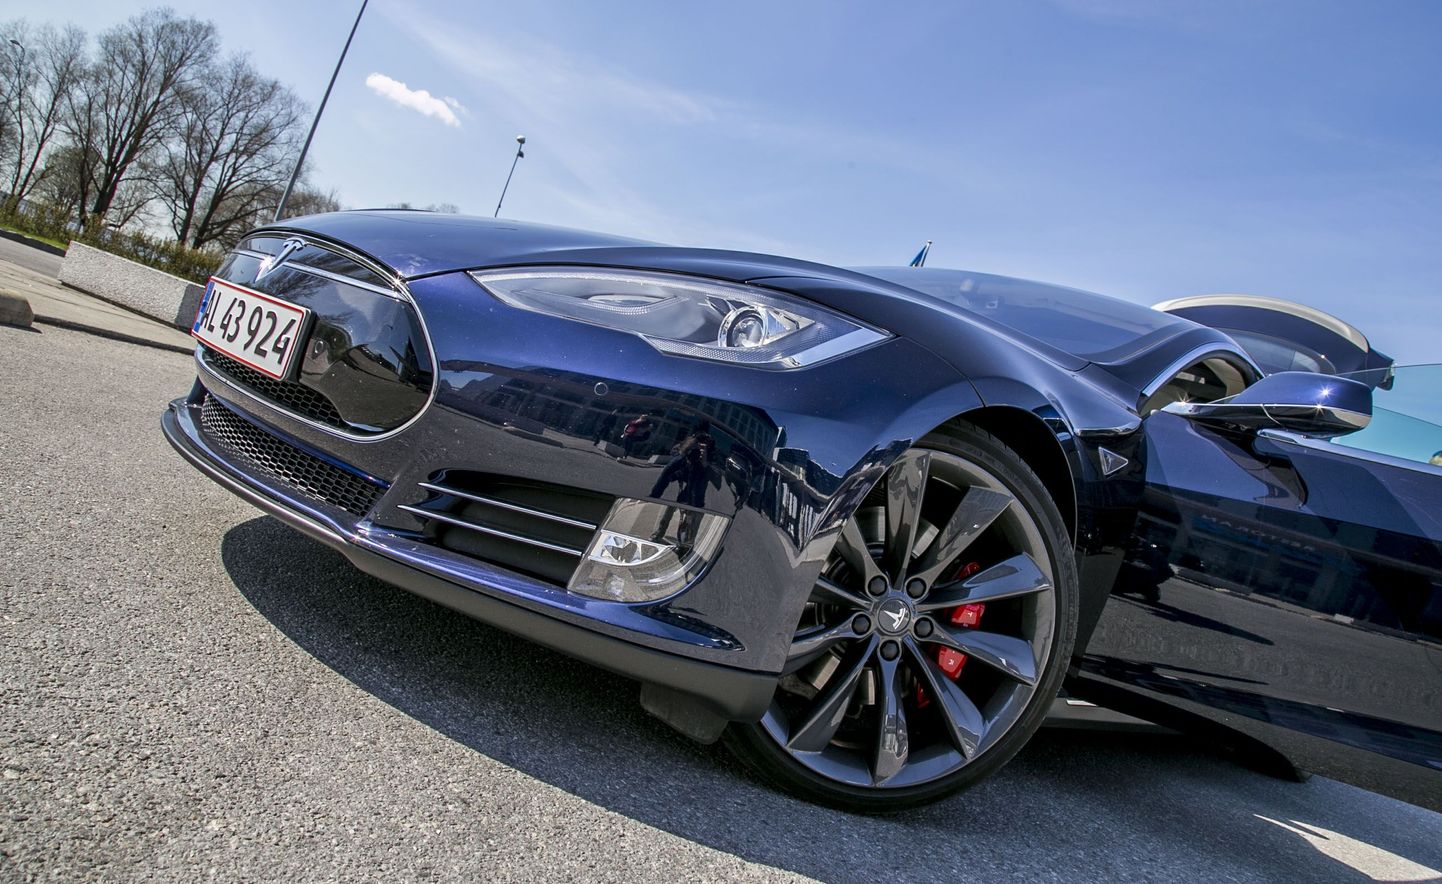 Rallimees Margus Murakas testis Tallinncity jaoks Tesla elektriautot.